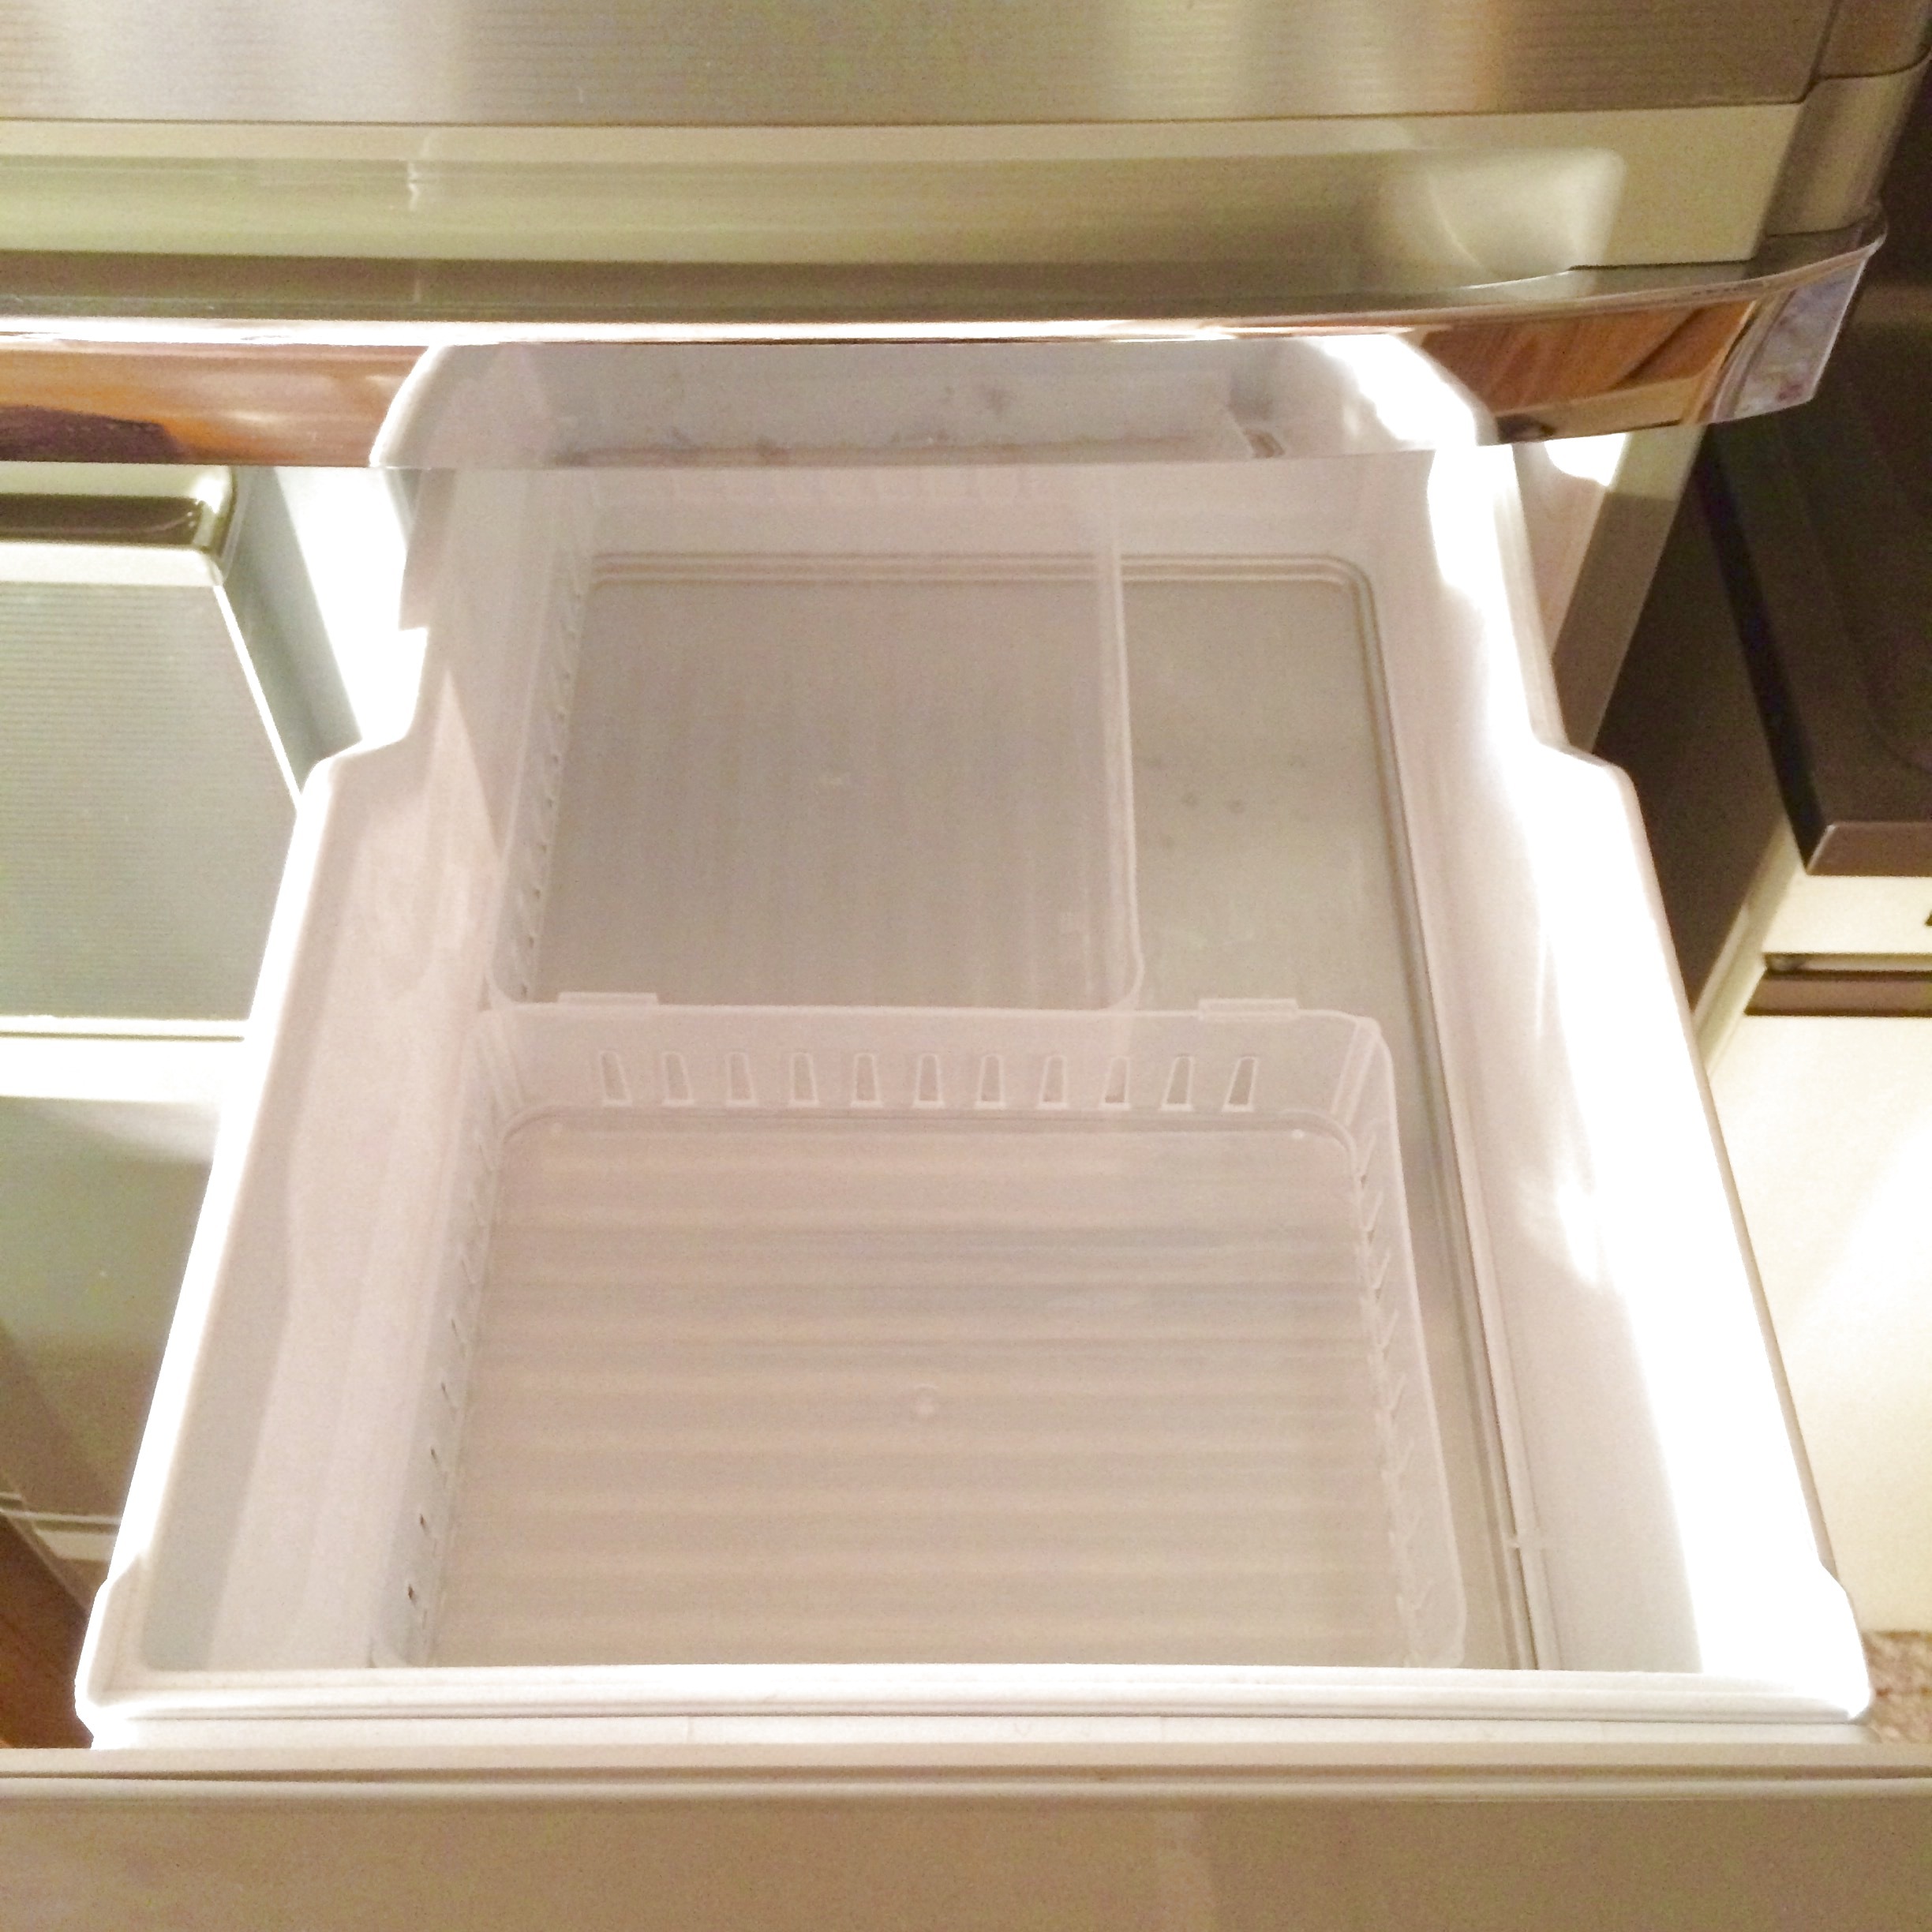 100円ショップの仕切り板で冷凍庫内がすっきり 暮らしニスタ